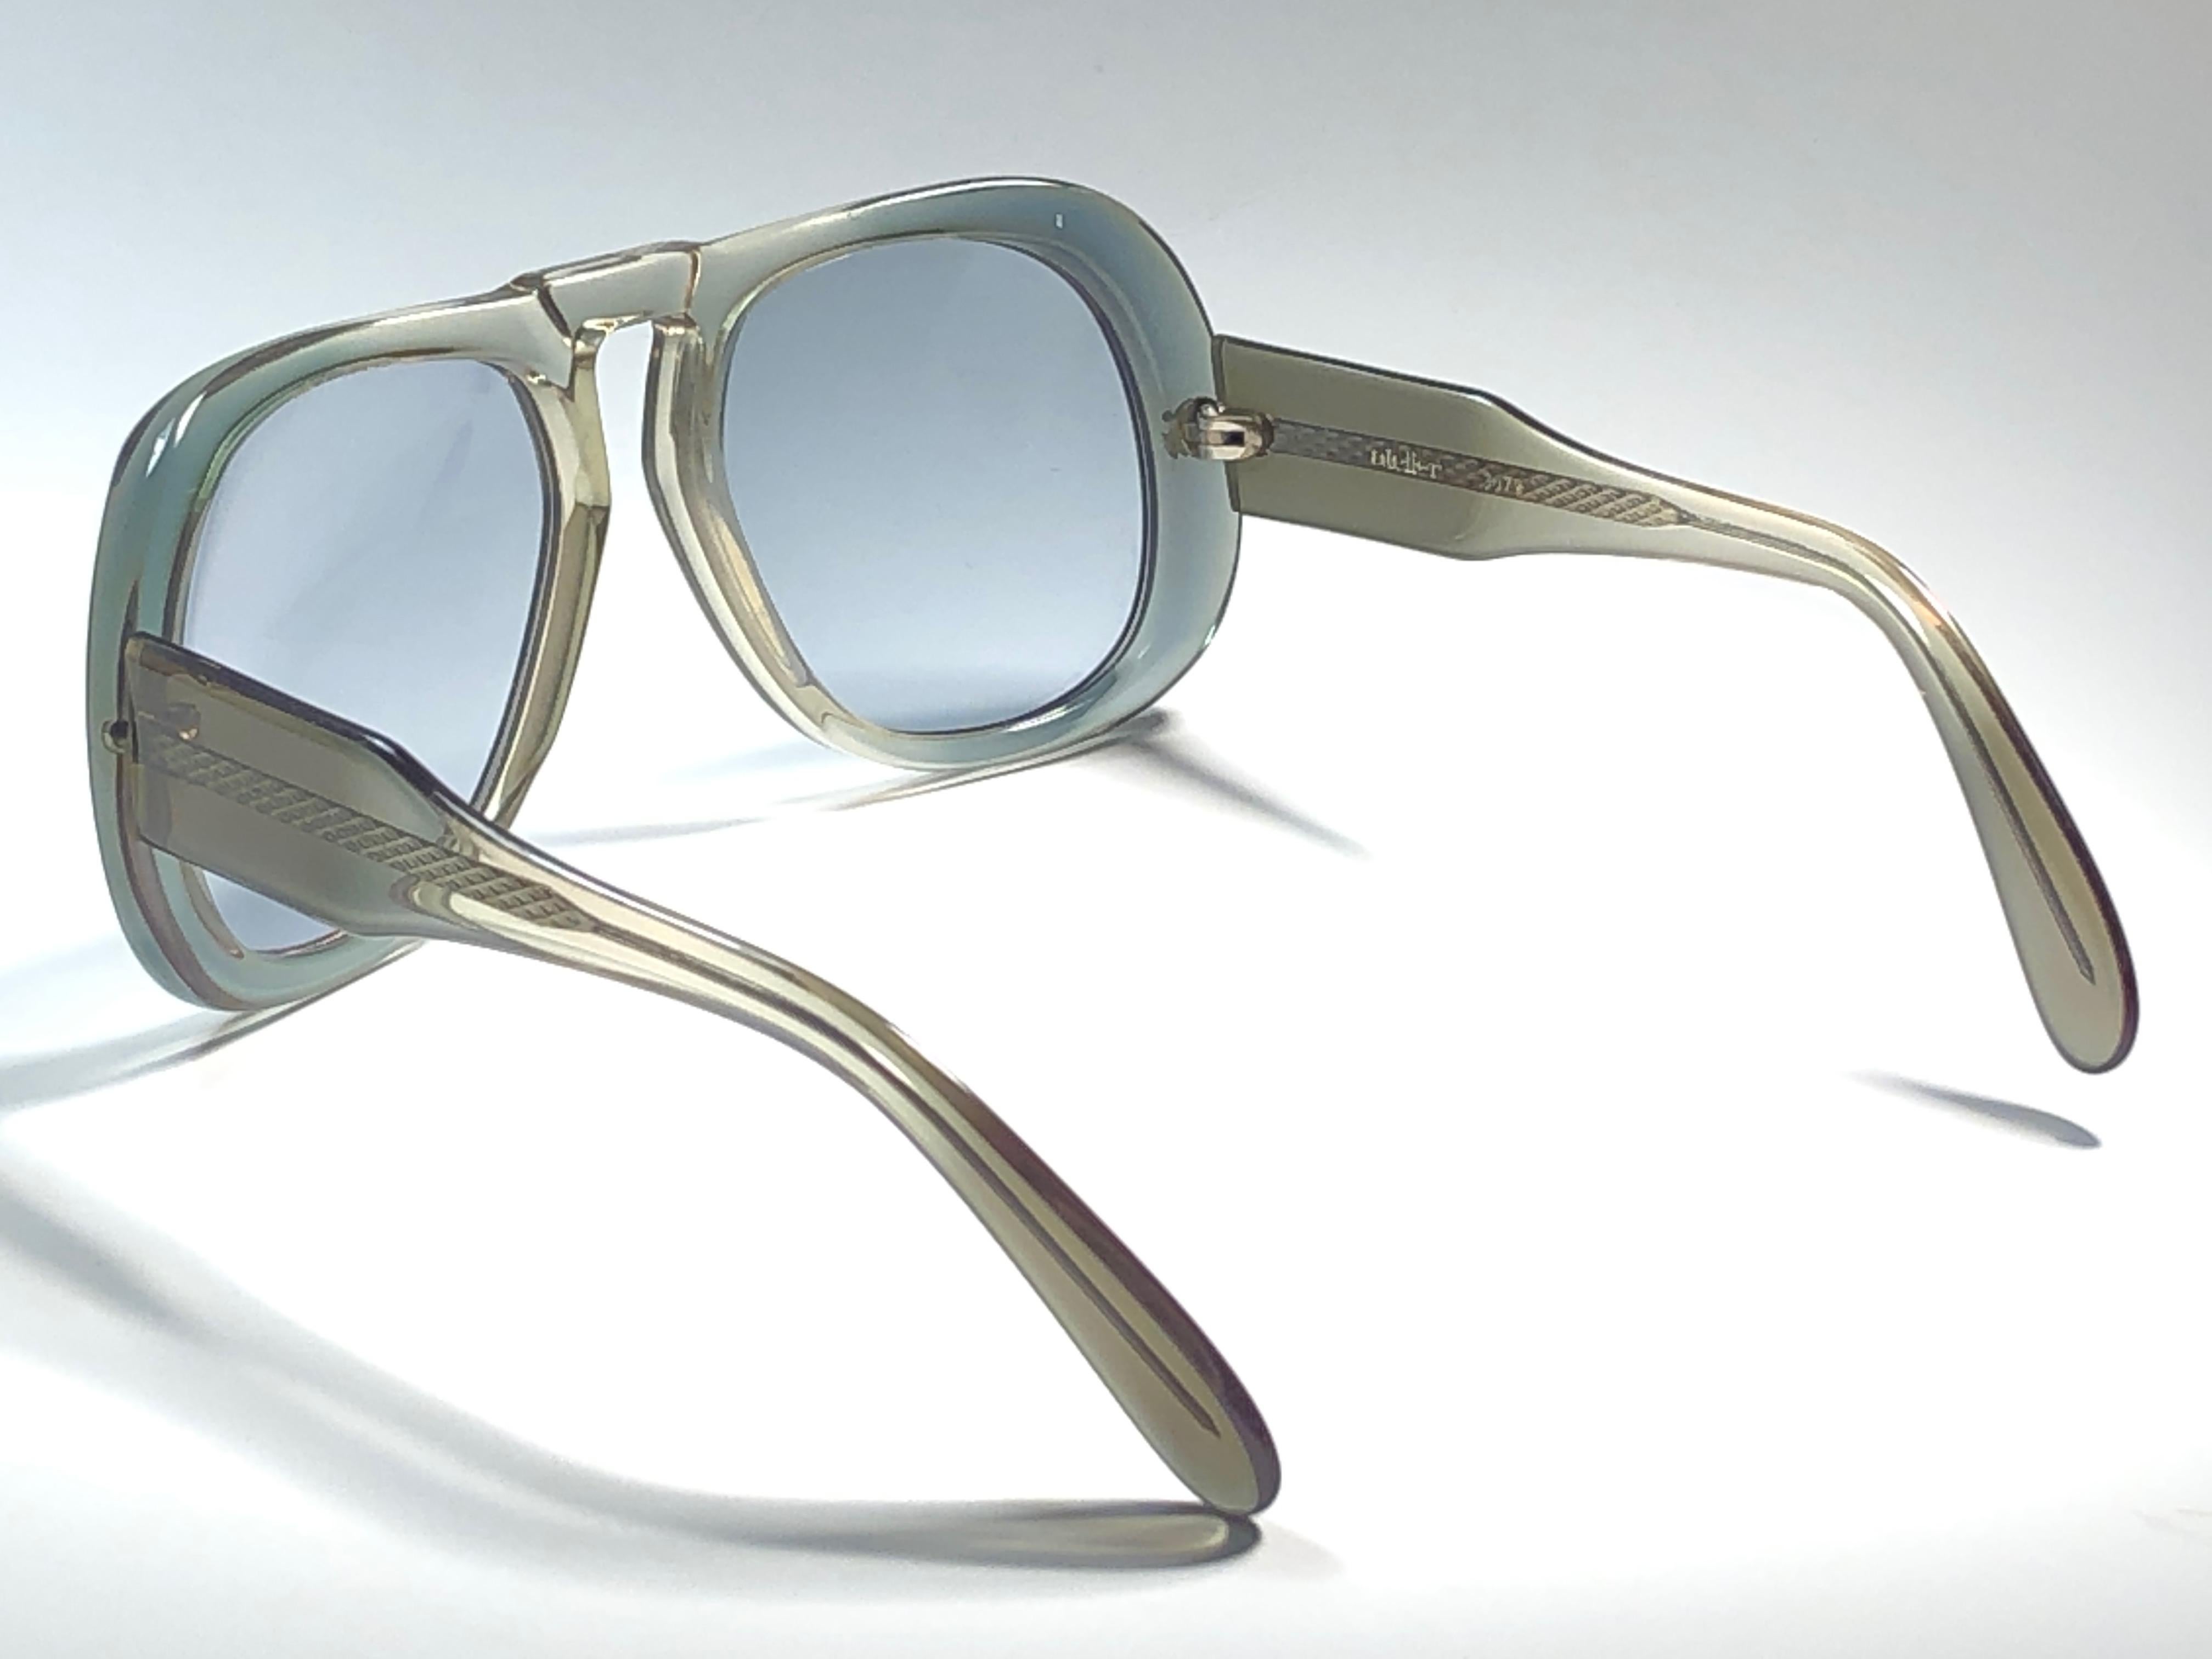 70s mobster glasses